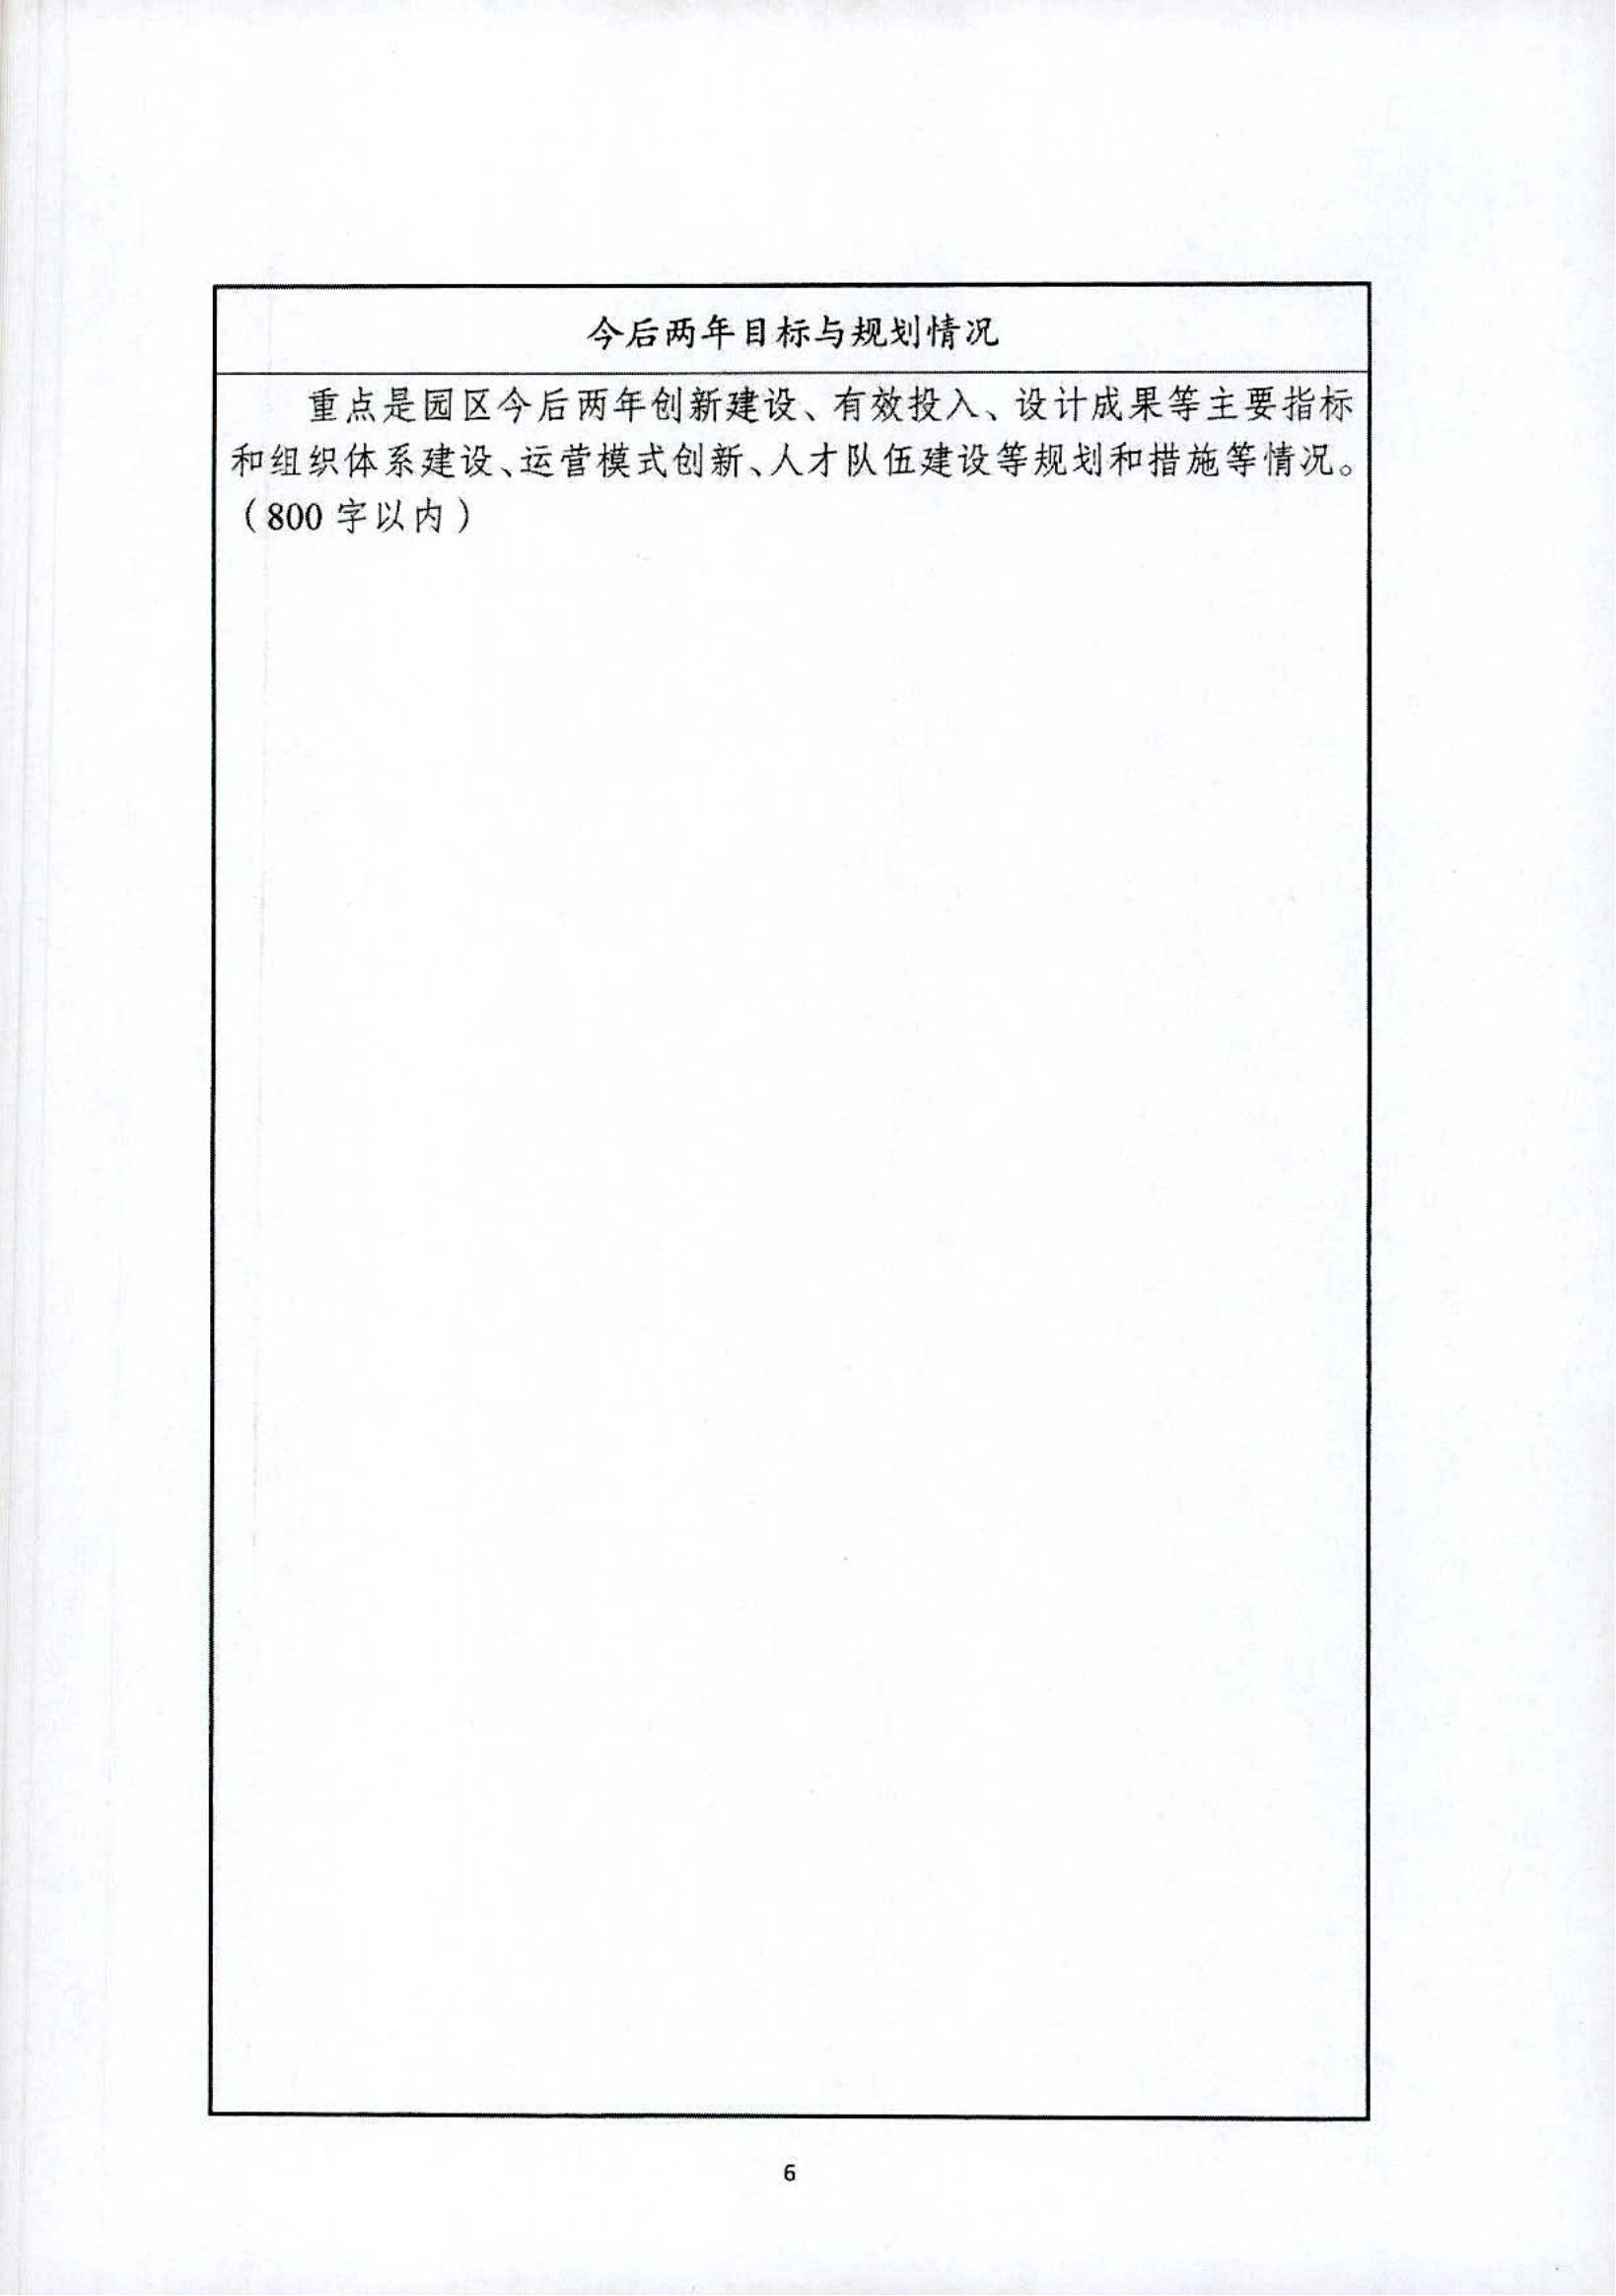 关于开展黑龙江省省级创意设计产业园区2022年度申报工作的通知_09.jpg